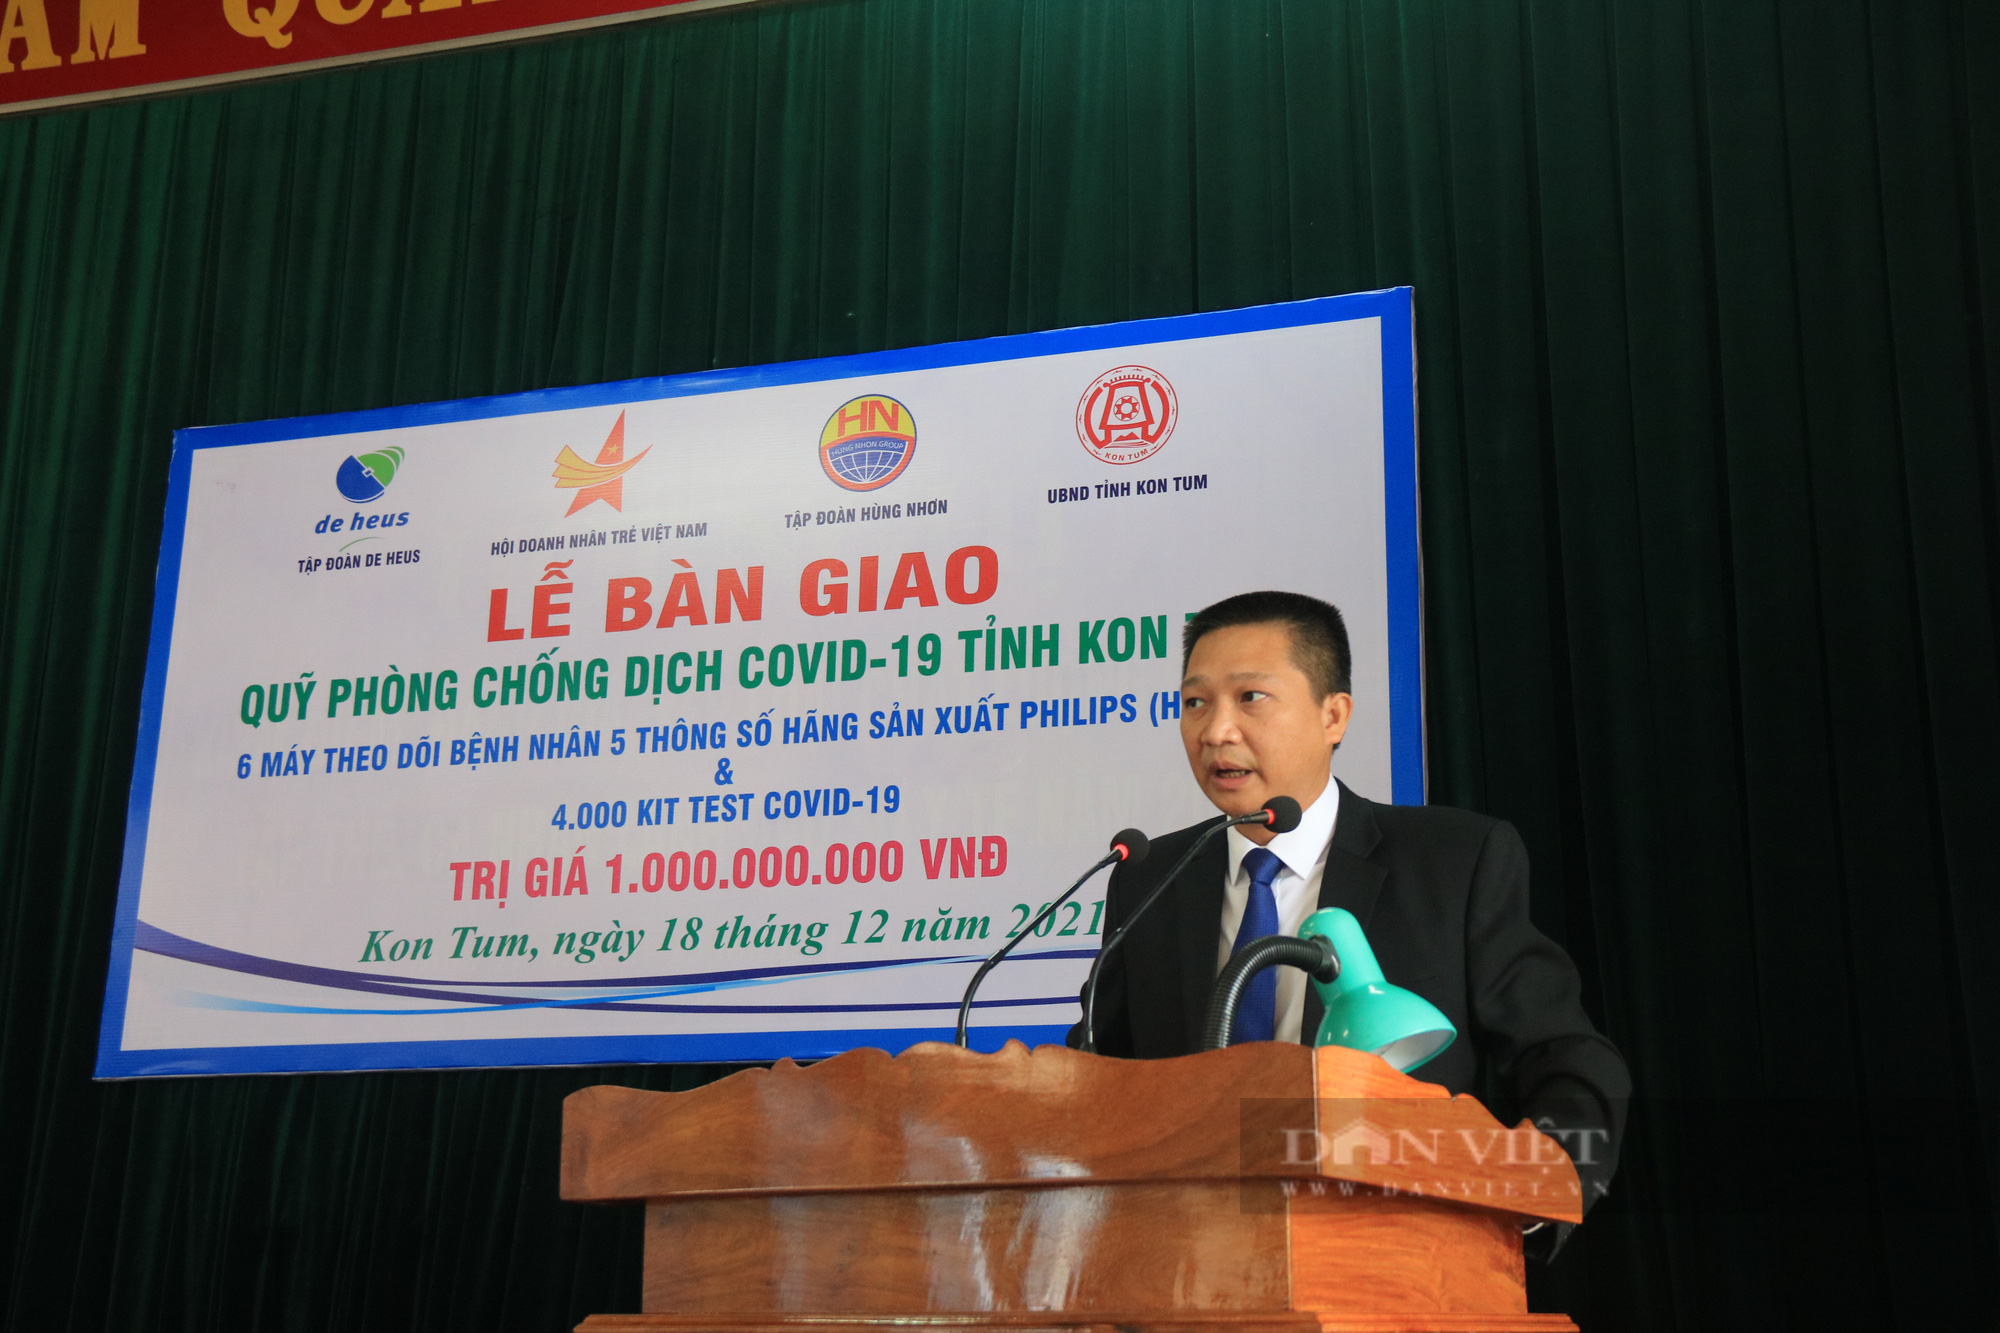 Tập đoàn Hùng Nhơn và De Heus trao tặng thiết bị y tế phòng chống dịch Covid-19 tại tỉnh Kon Tum - Ảnh 4.